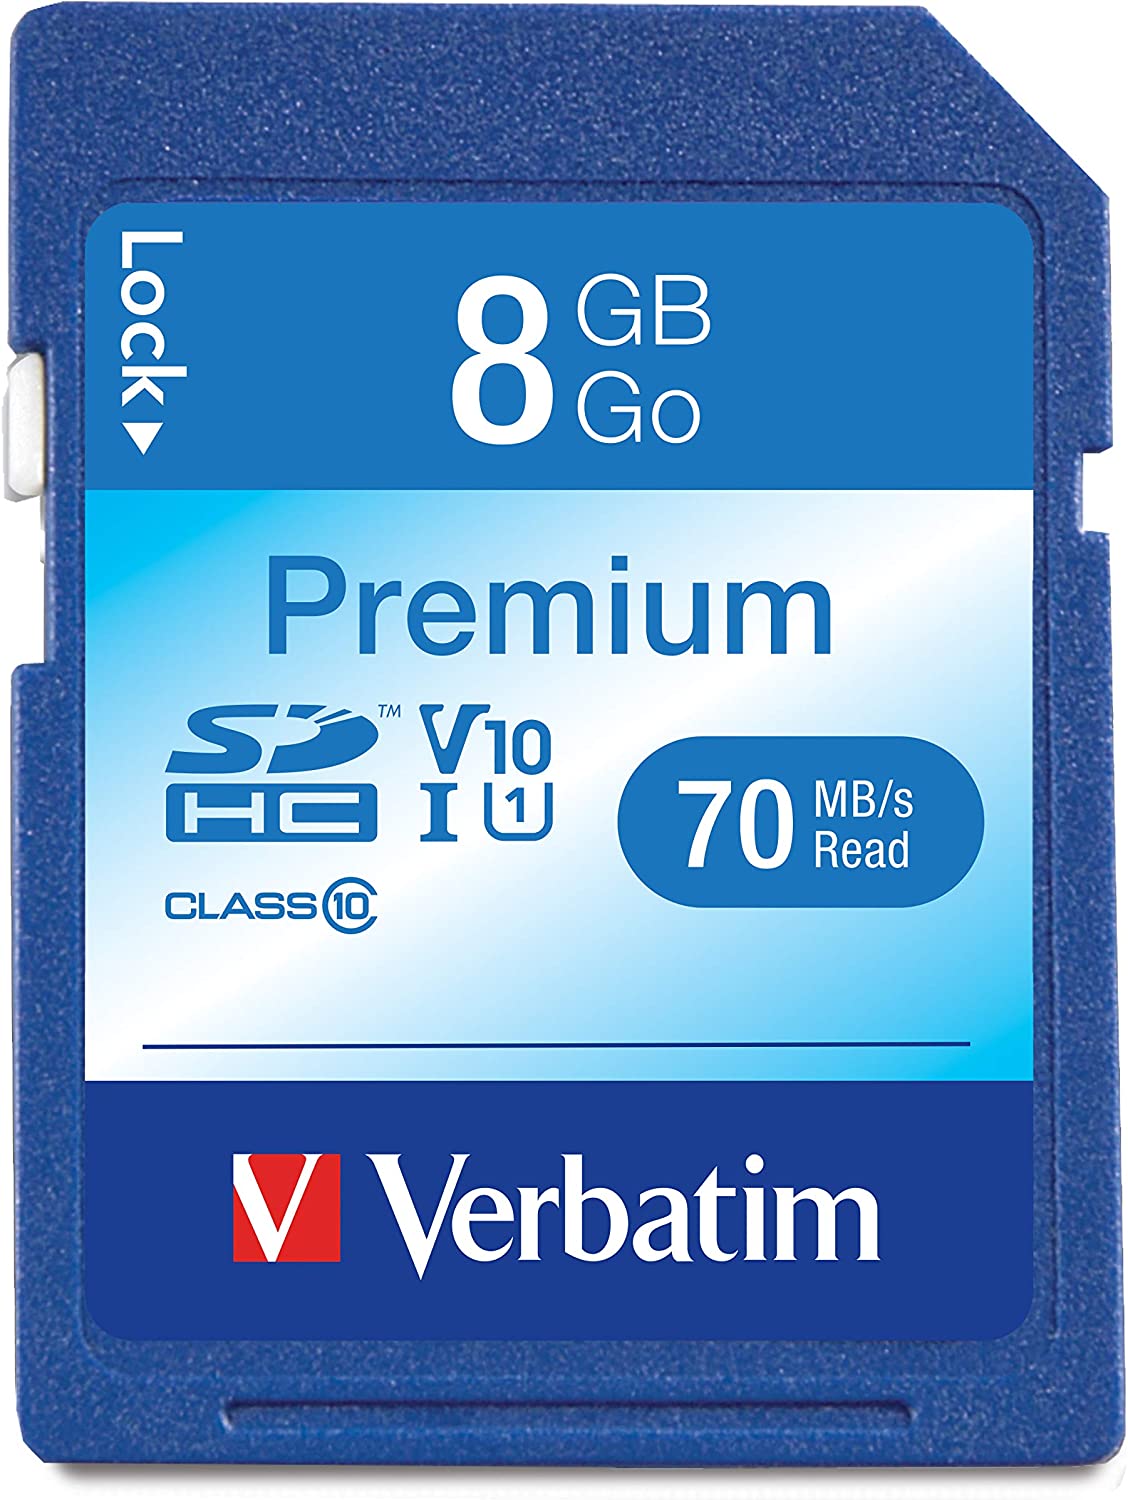 버바팀 8GB 프리미엄 SDHC 메모리 카드, UHS-IV10 U1 클래스 10, 블루(96318)